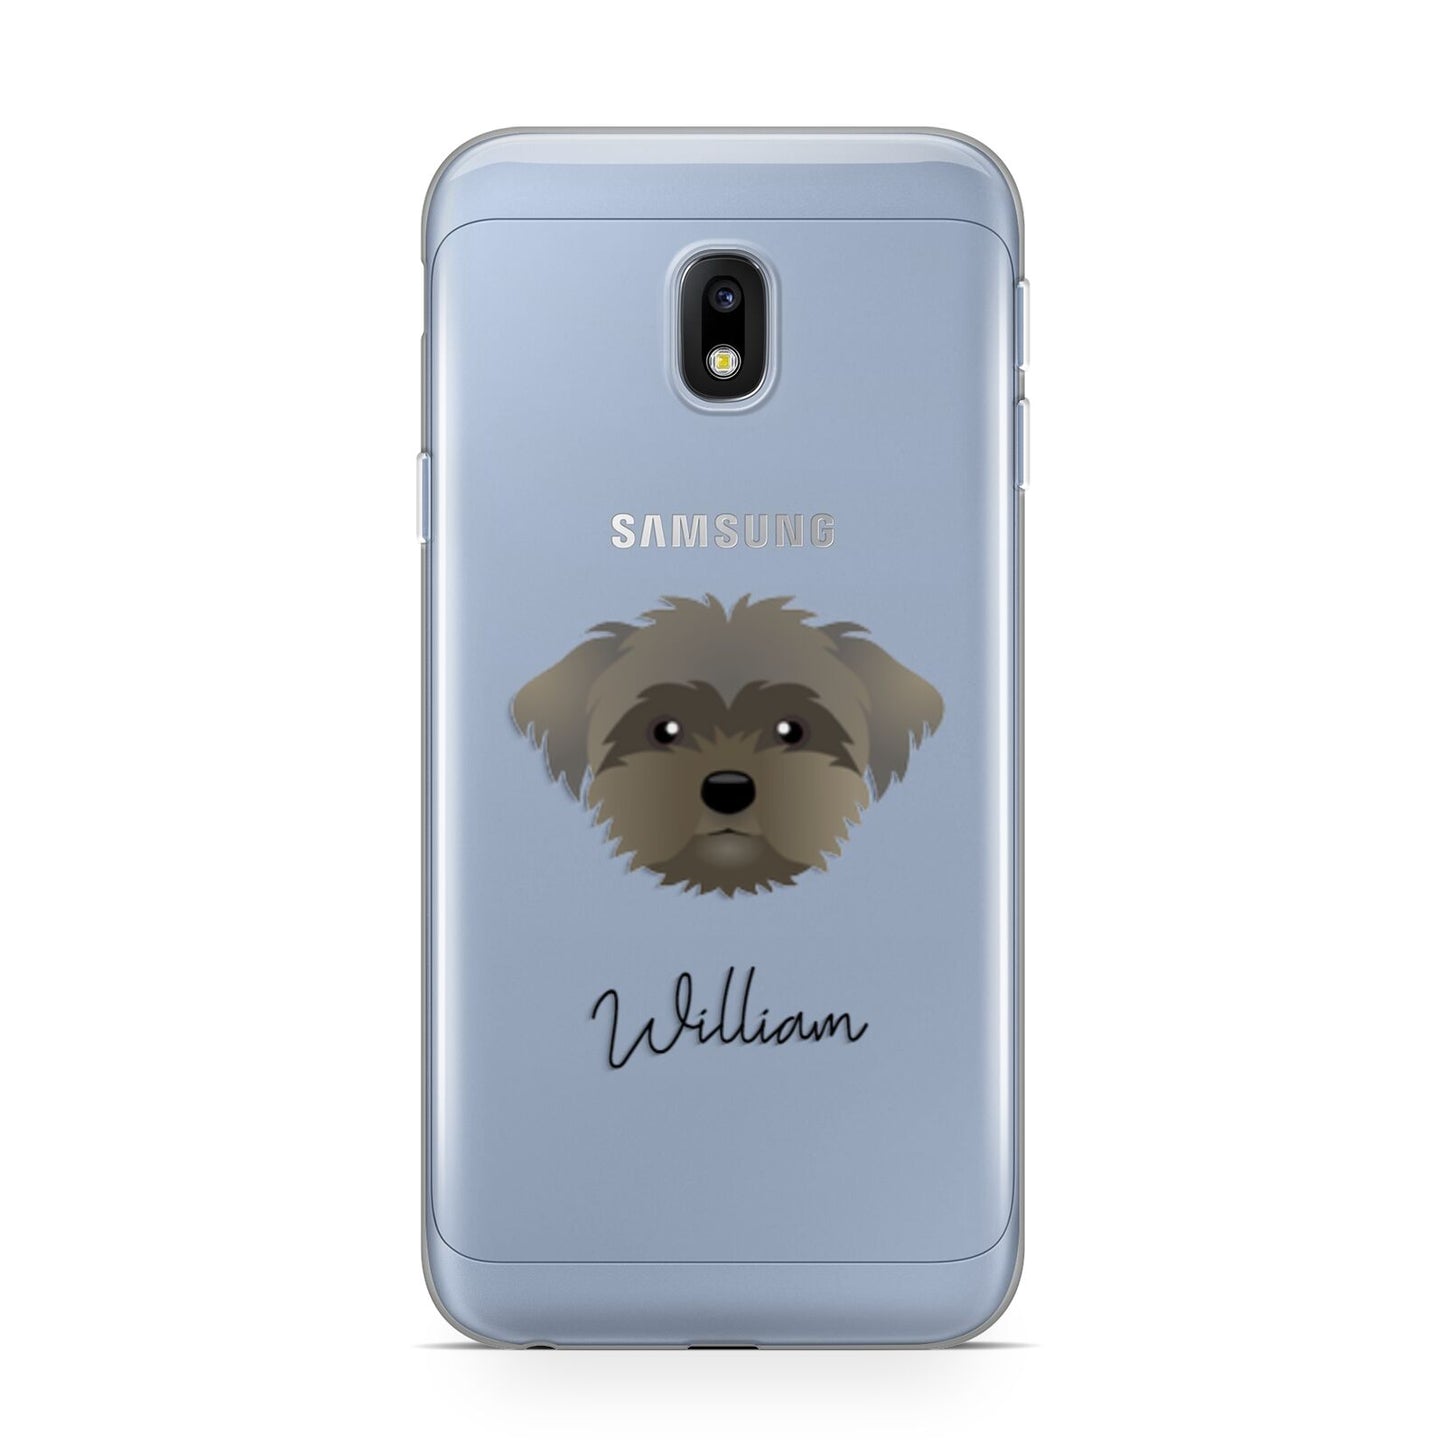 Peek a poo Personalised Samsung Galaxy J3 2017 Case